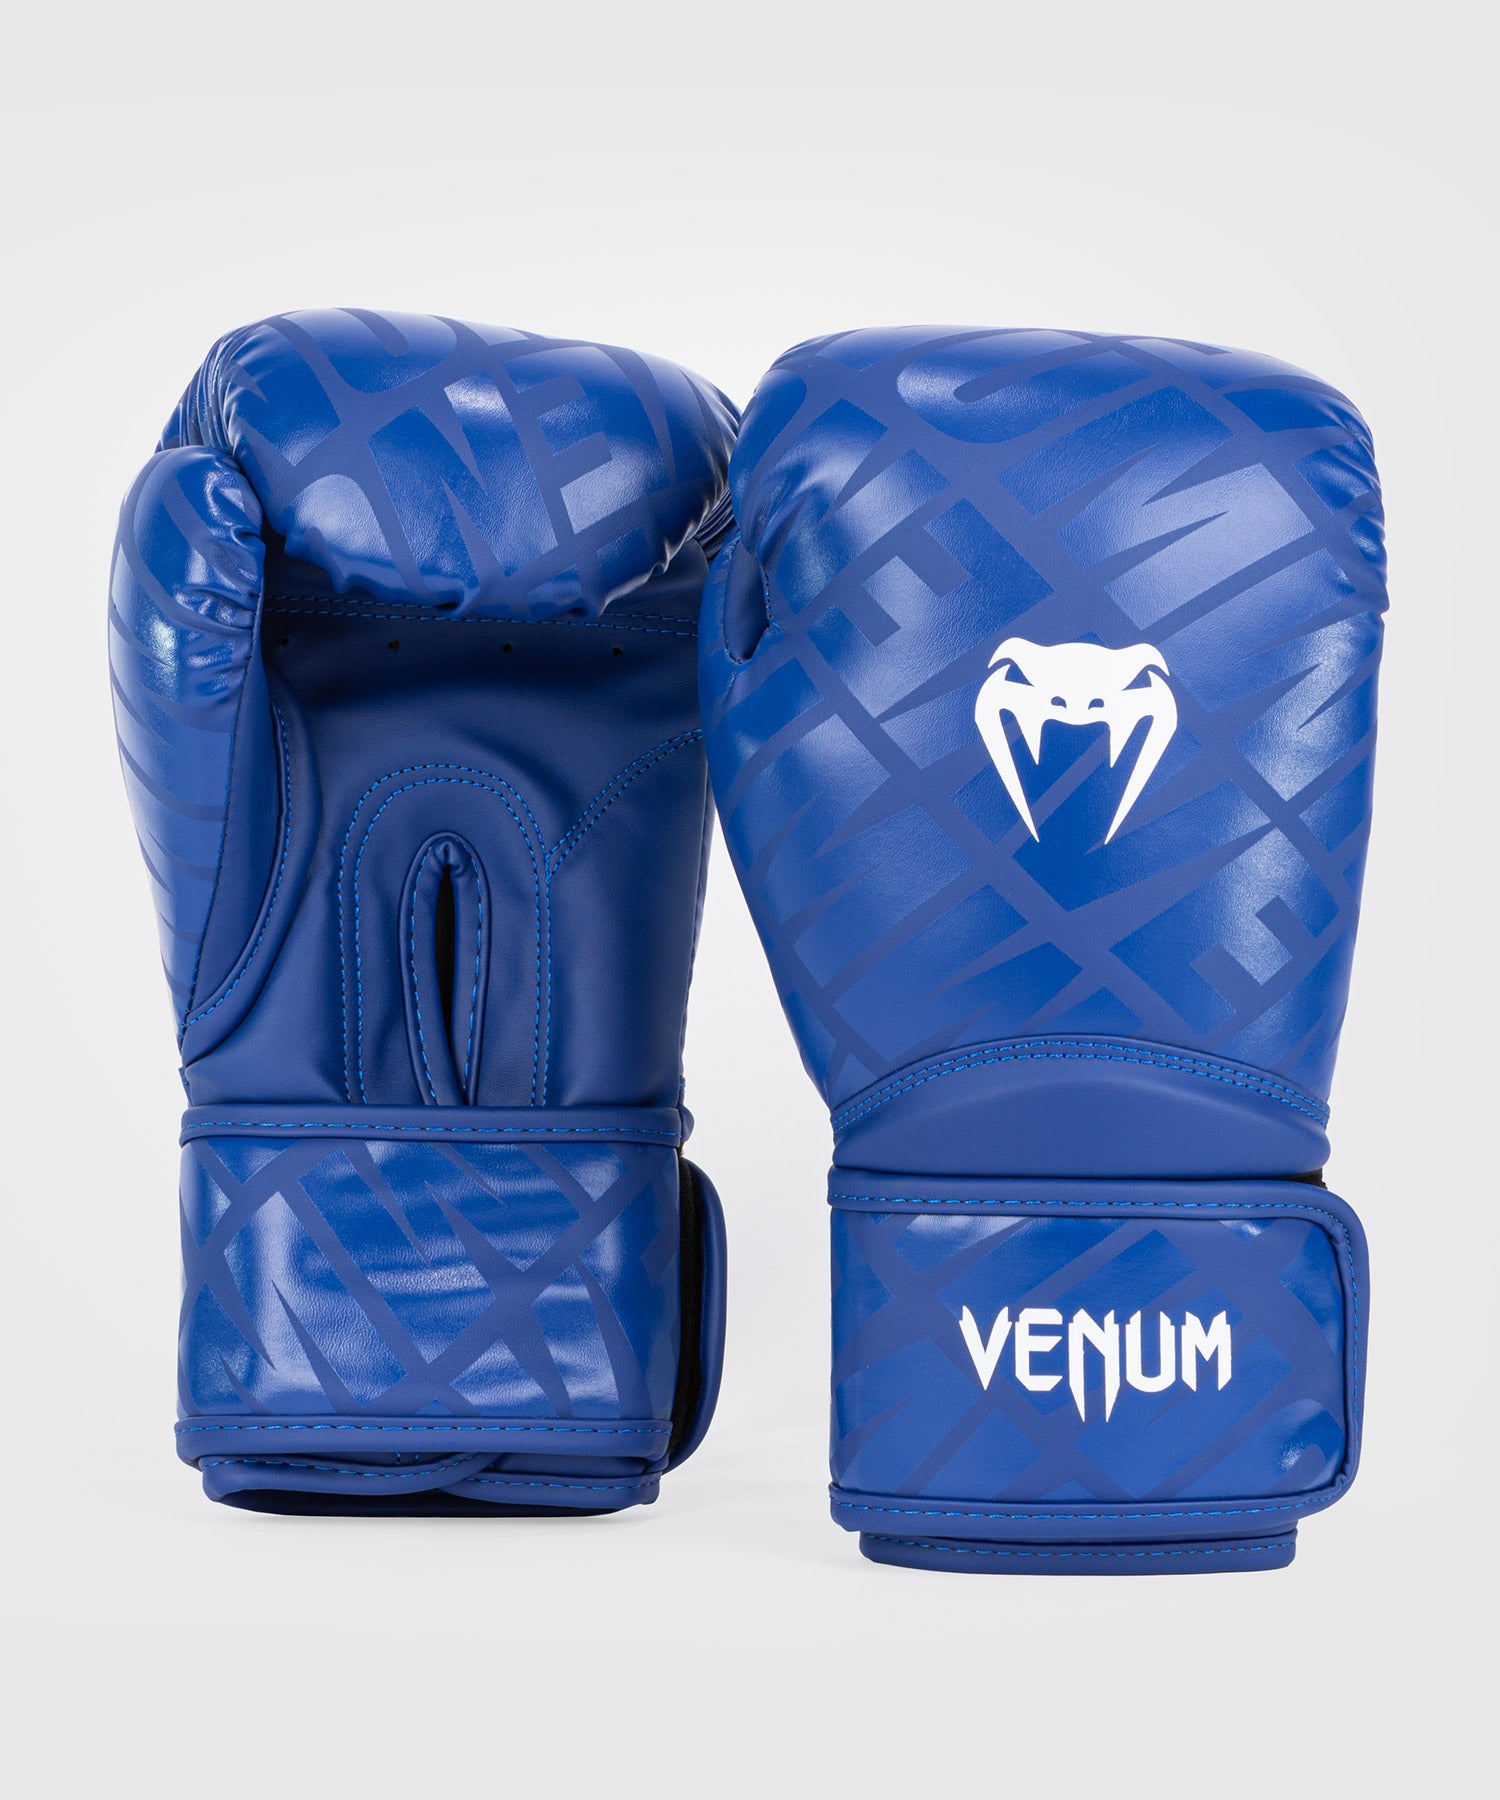 Espinilleras Venum Contender 2.0 - Protecciones Boxeo Kickboxing